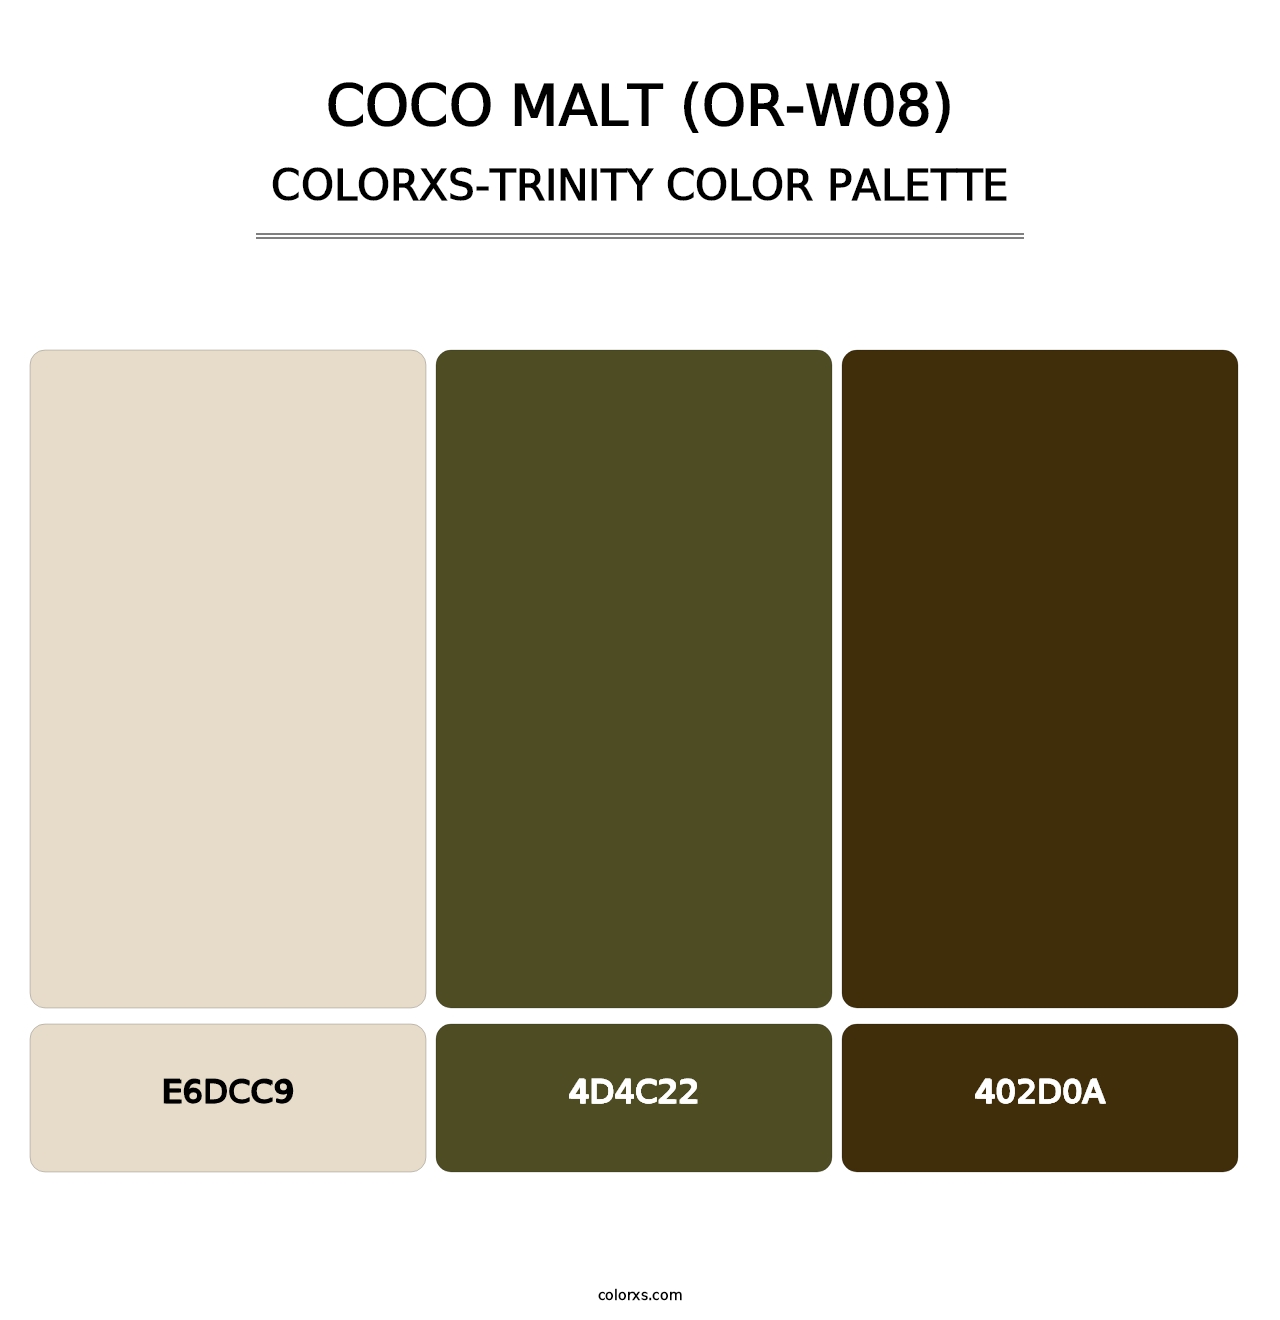 Coco Malt (OR-W08) - Colorxs Trinity Palette